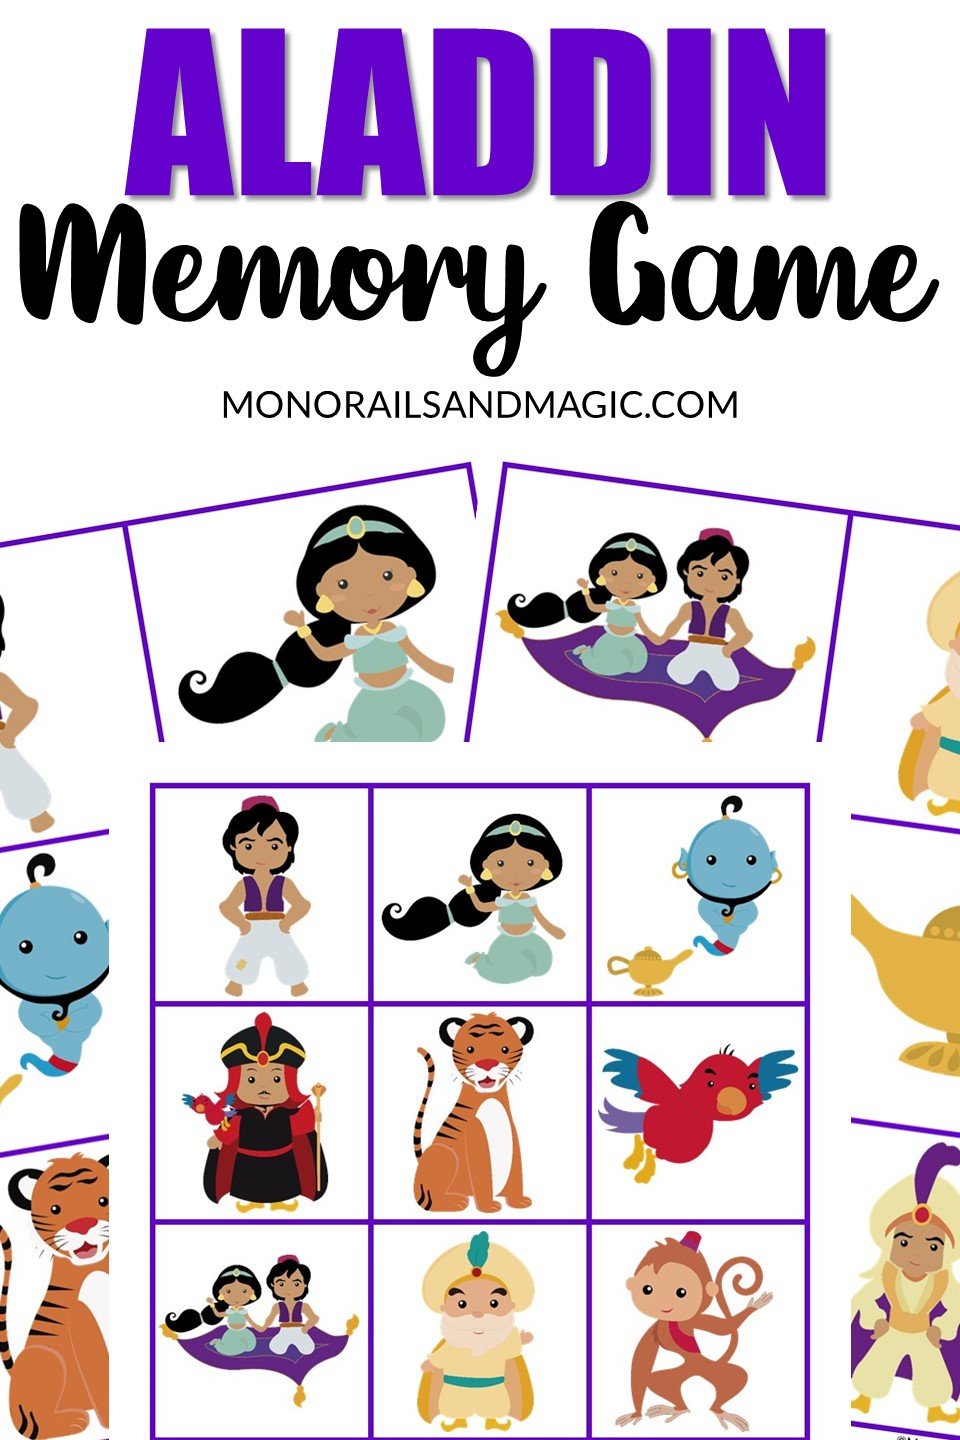 Free printable Aladdin memory game for kids.